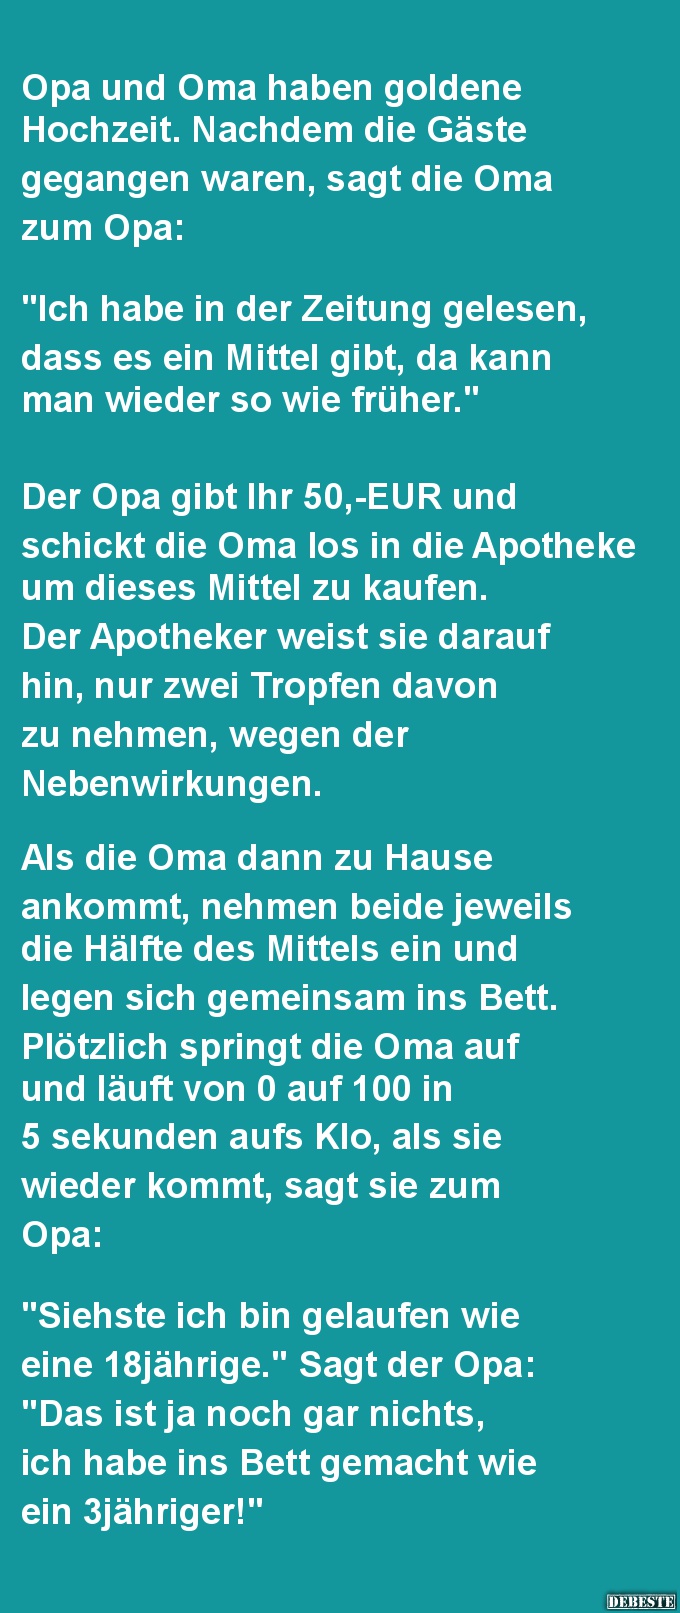 34++ Goldene hochzeit sprueche fuer oma und opa ideas